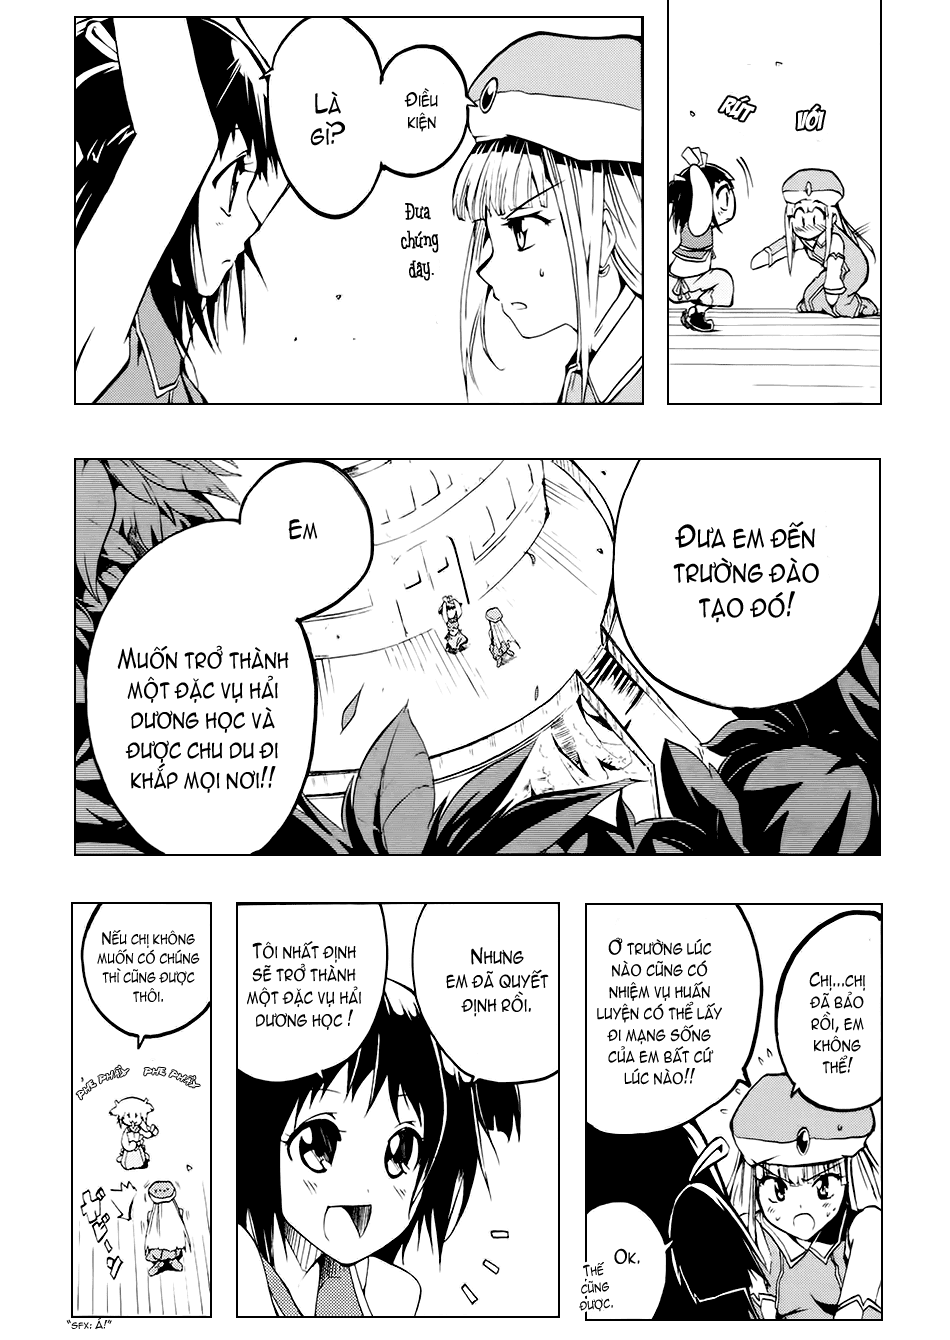 [Manga]: Esprit 0037